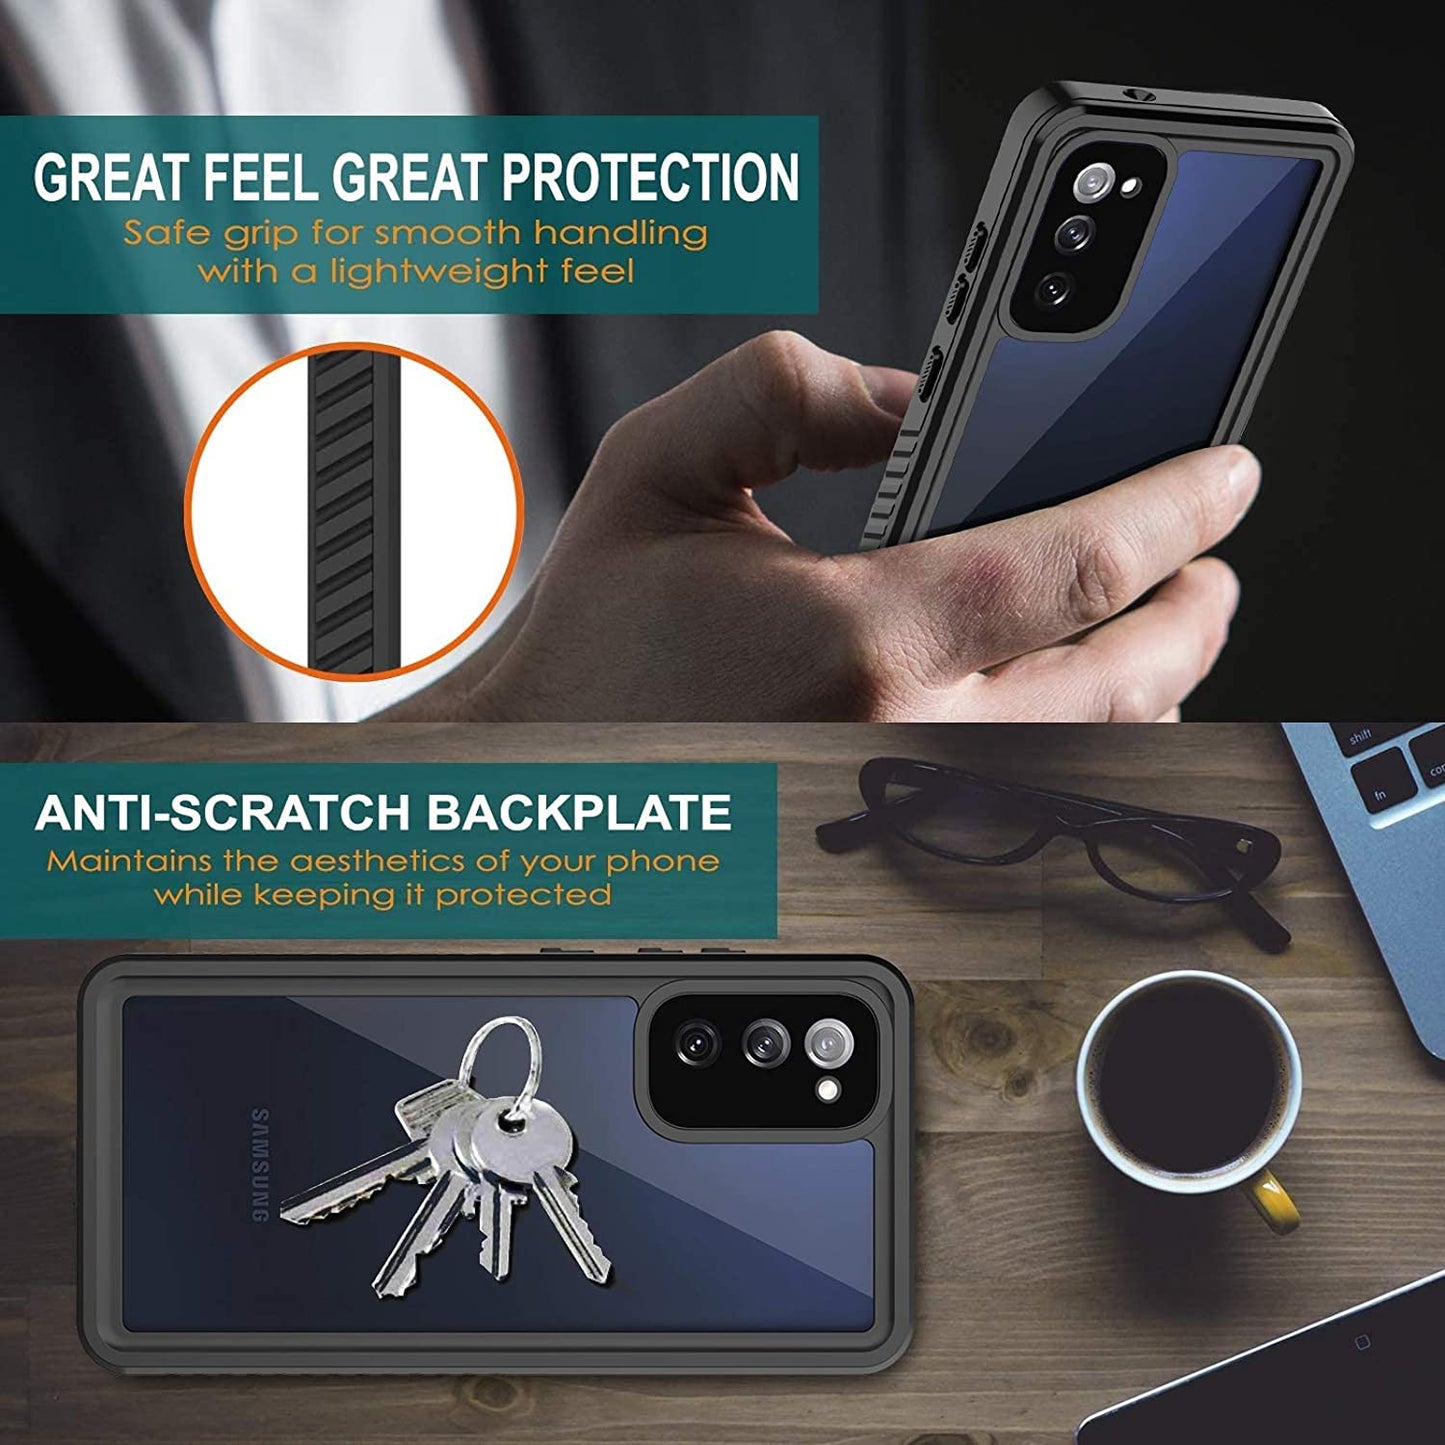 OAKTREE Samsung Galaxy S20 FE Waterproof Full-Body Rugged Case - Black / Clear